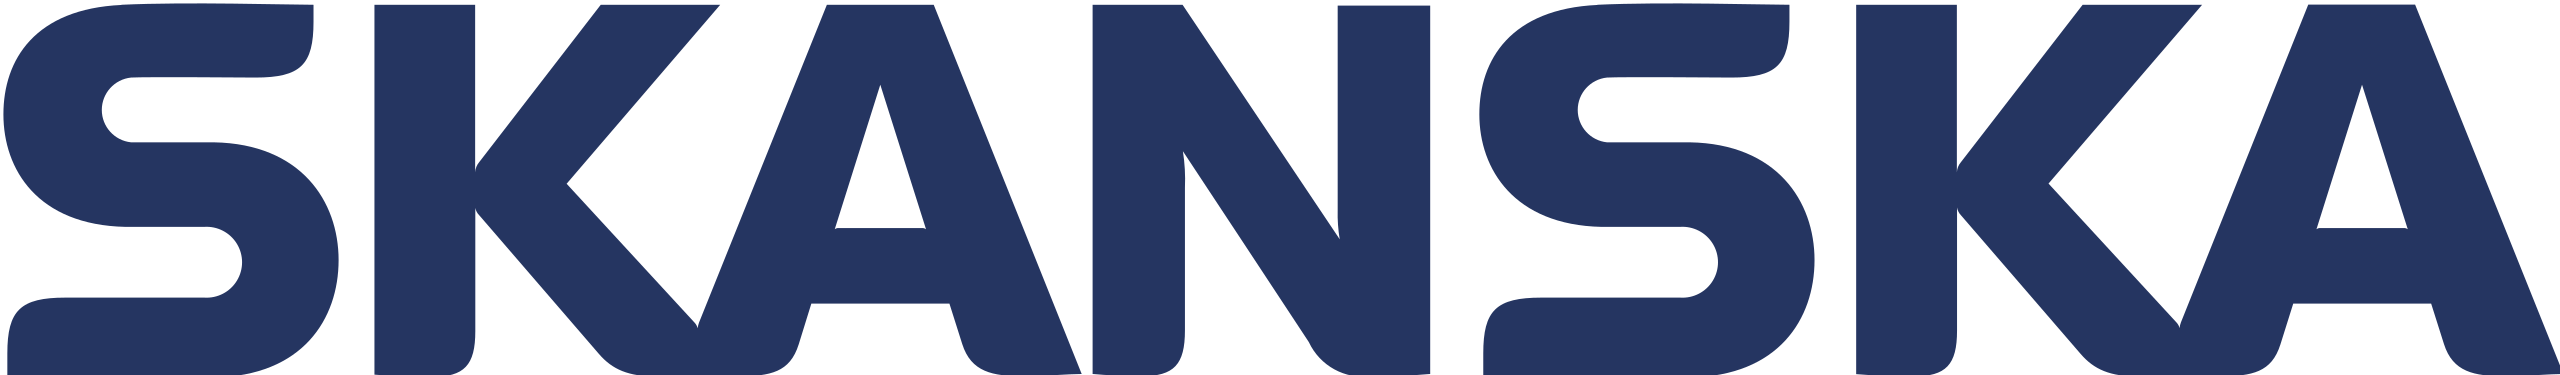 03 skanska logo